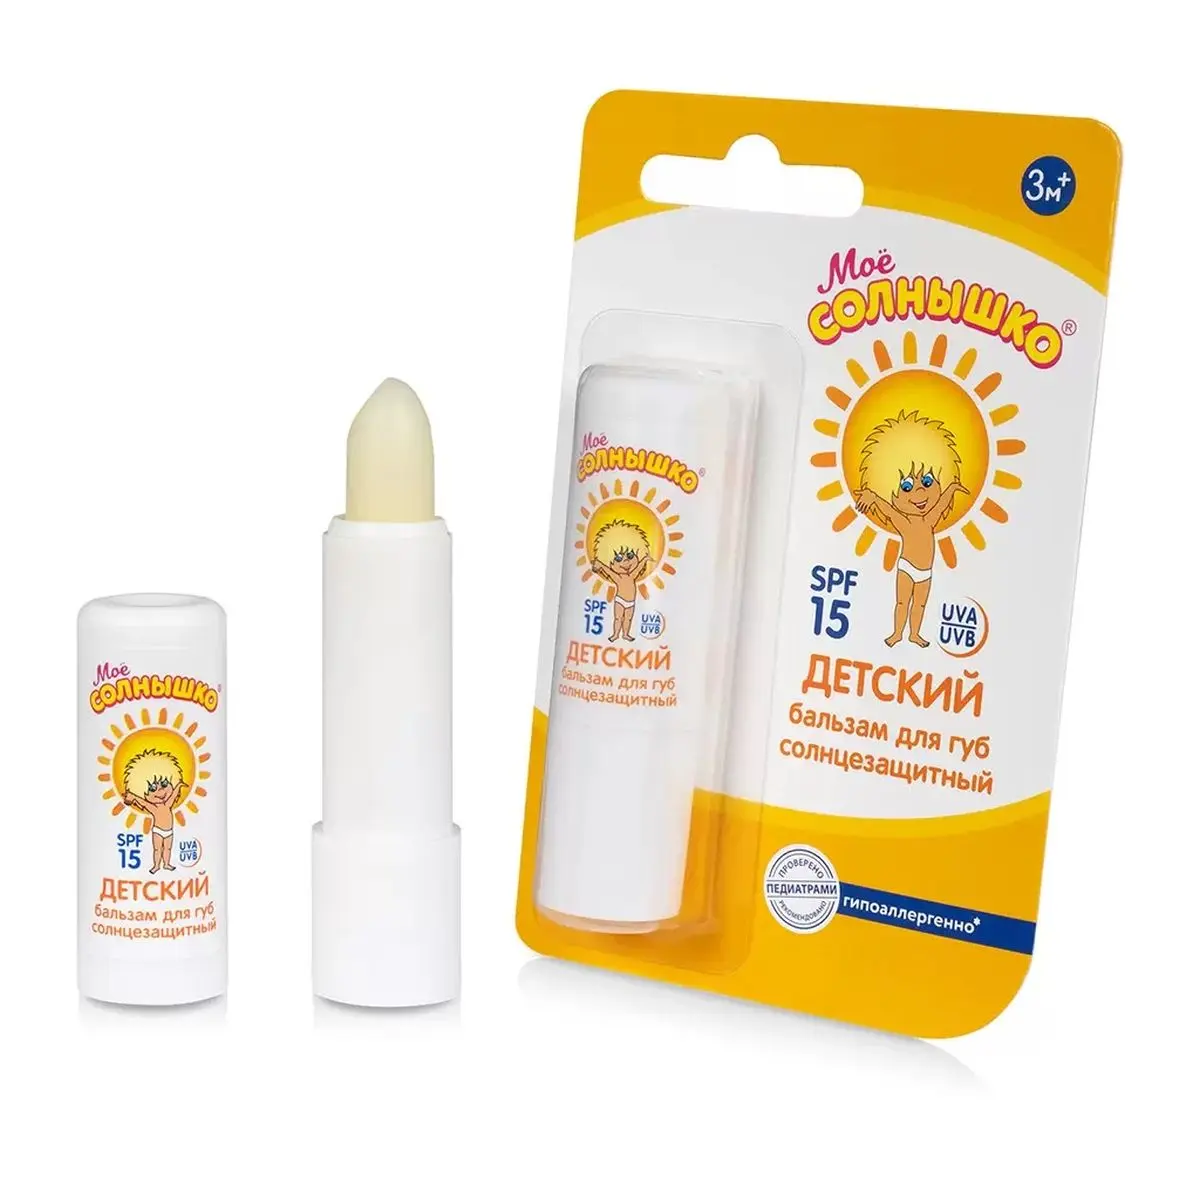 Детский бальзам для губ солнцезащитный SPF 15